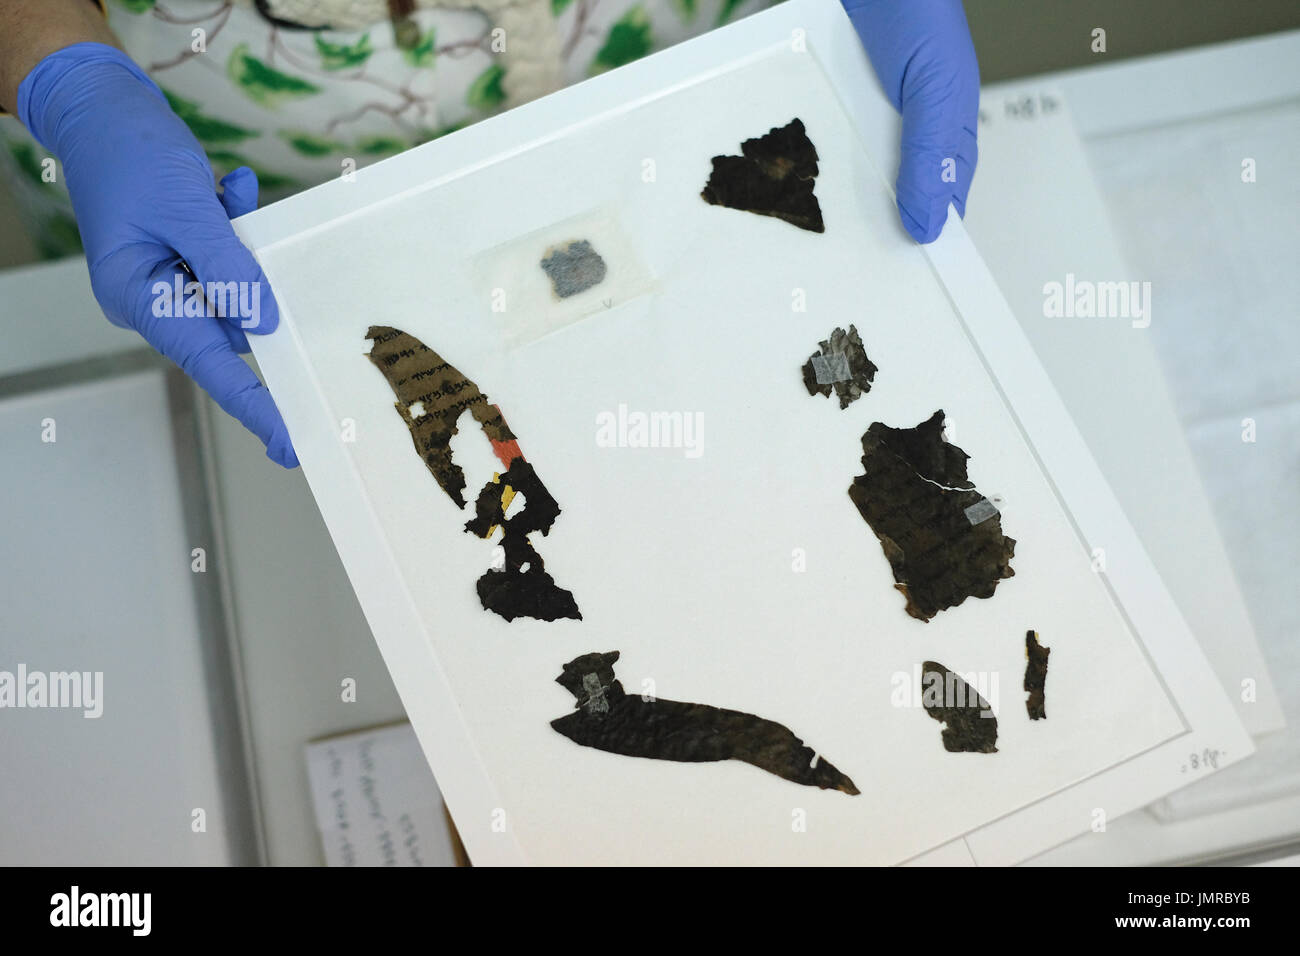 Un analyste de la conservation de l'Autorité des antiquités d'Israël détient des fragments de la mer morte écrit en hébreu trouvés à Qumrân des grottes à l'intérieur du laboratoire de conservation du Musée d'Israël à Jérusalem Israël Banque D'Images